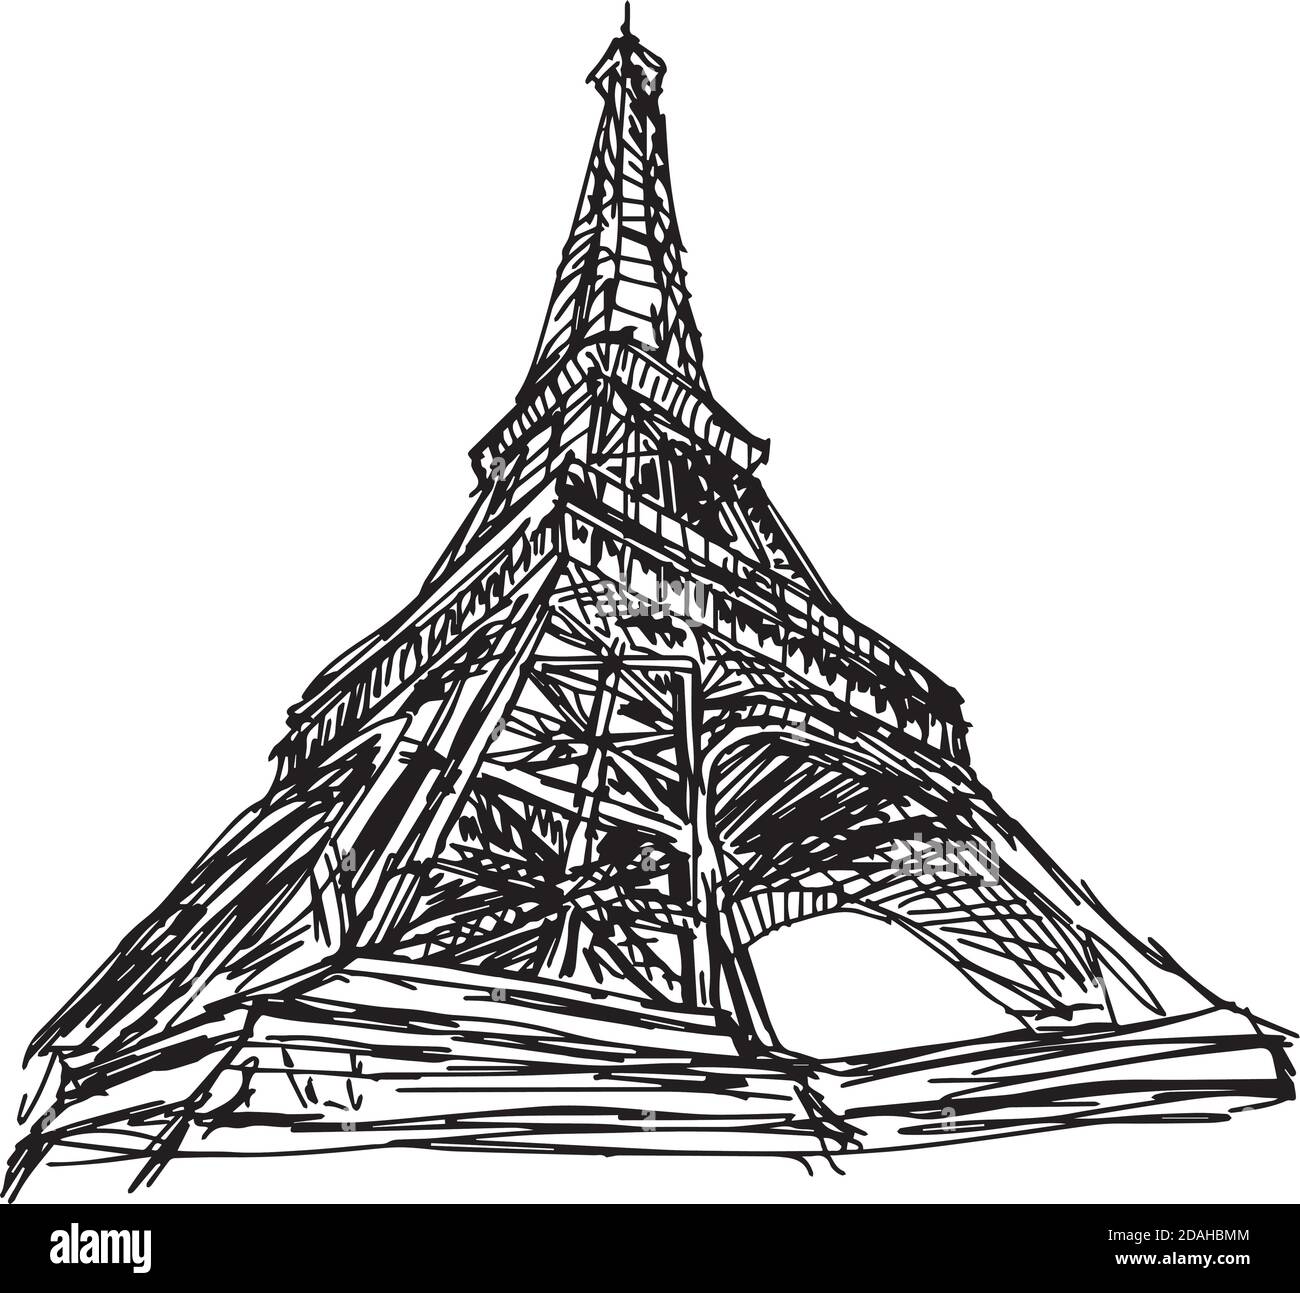 Illustration vecteur Doodle main dessinée de croquis Paris tour eiffel, France, isolée sur blanc Illustration de Vecteur